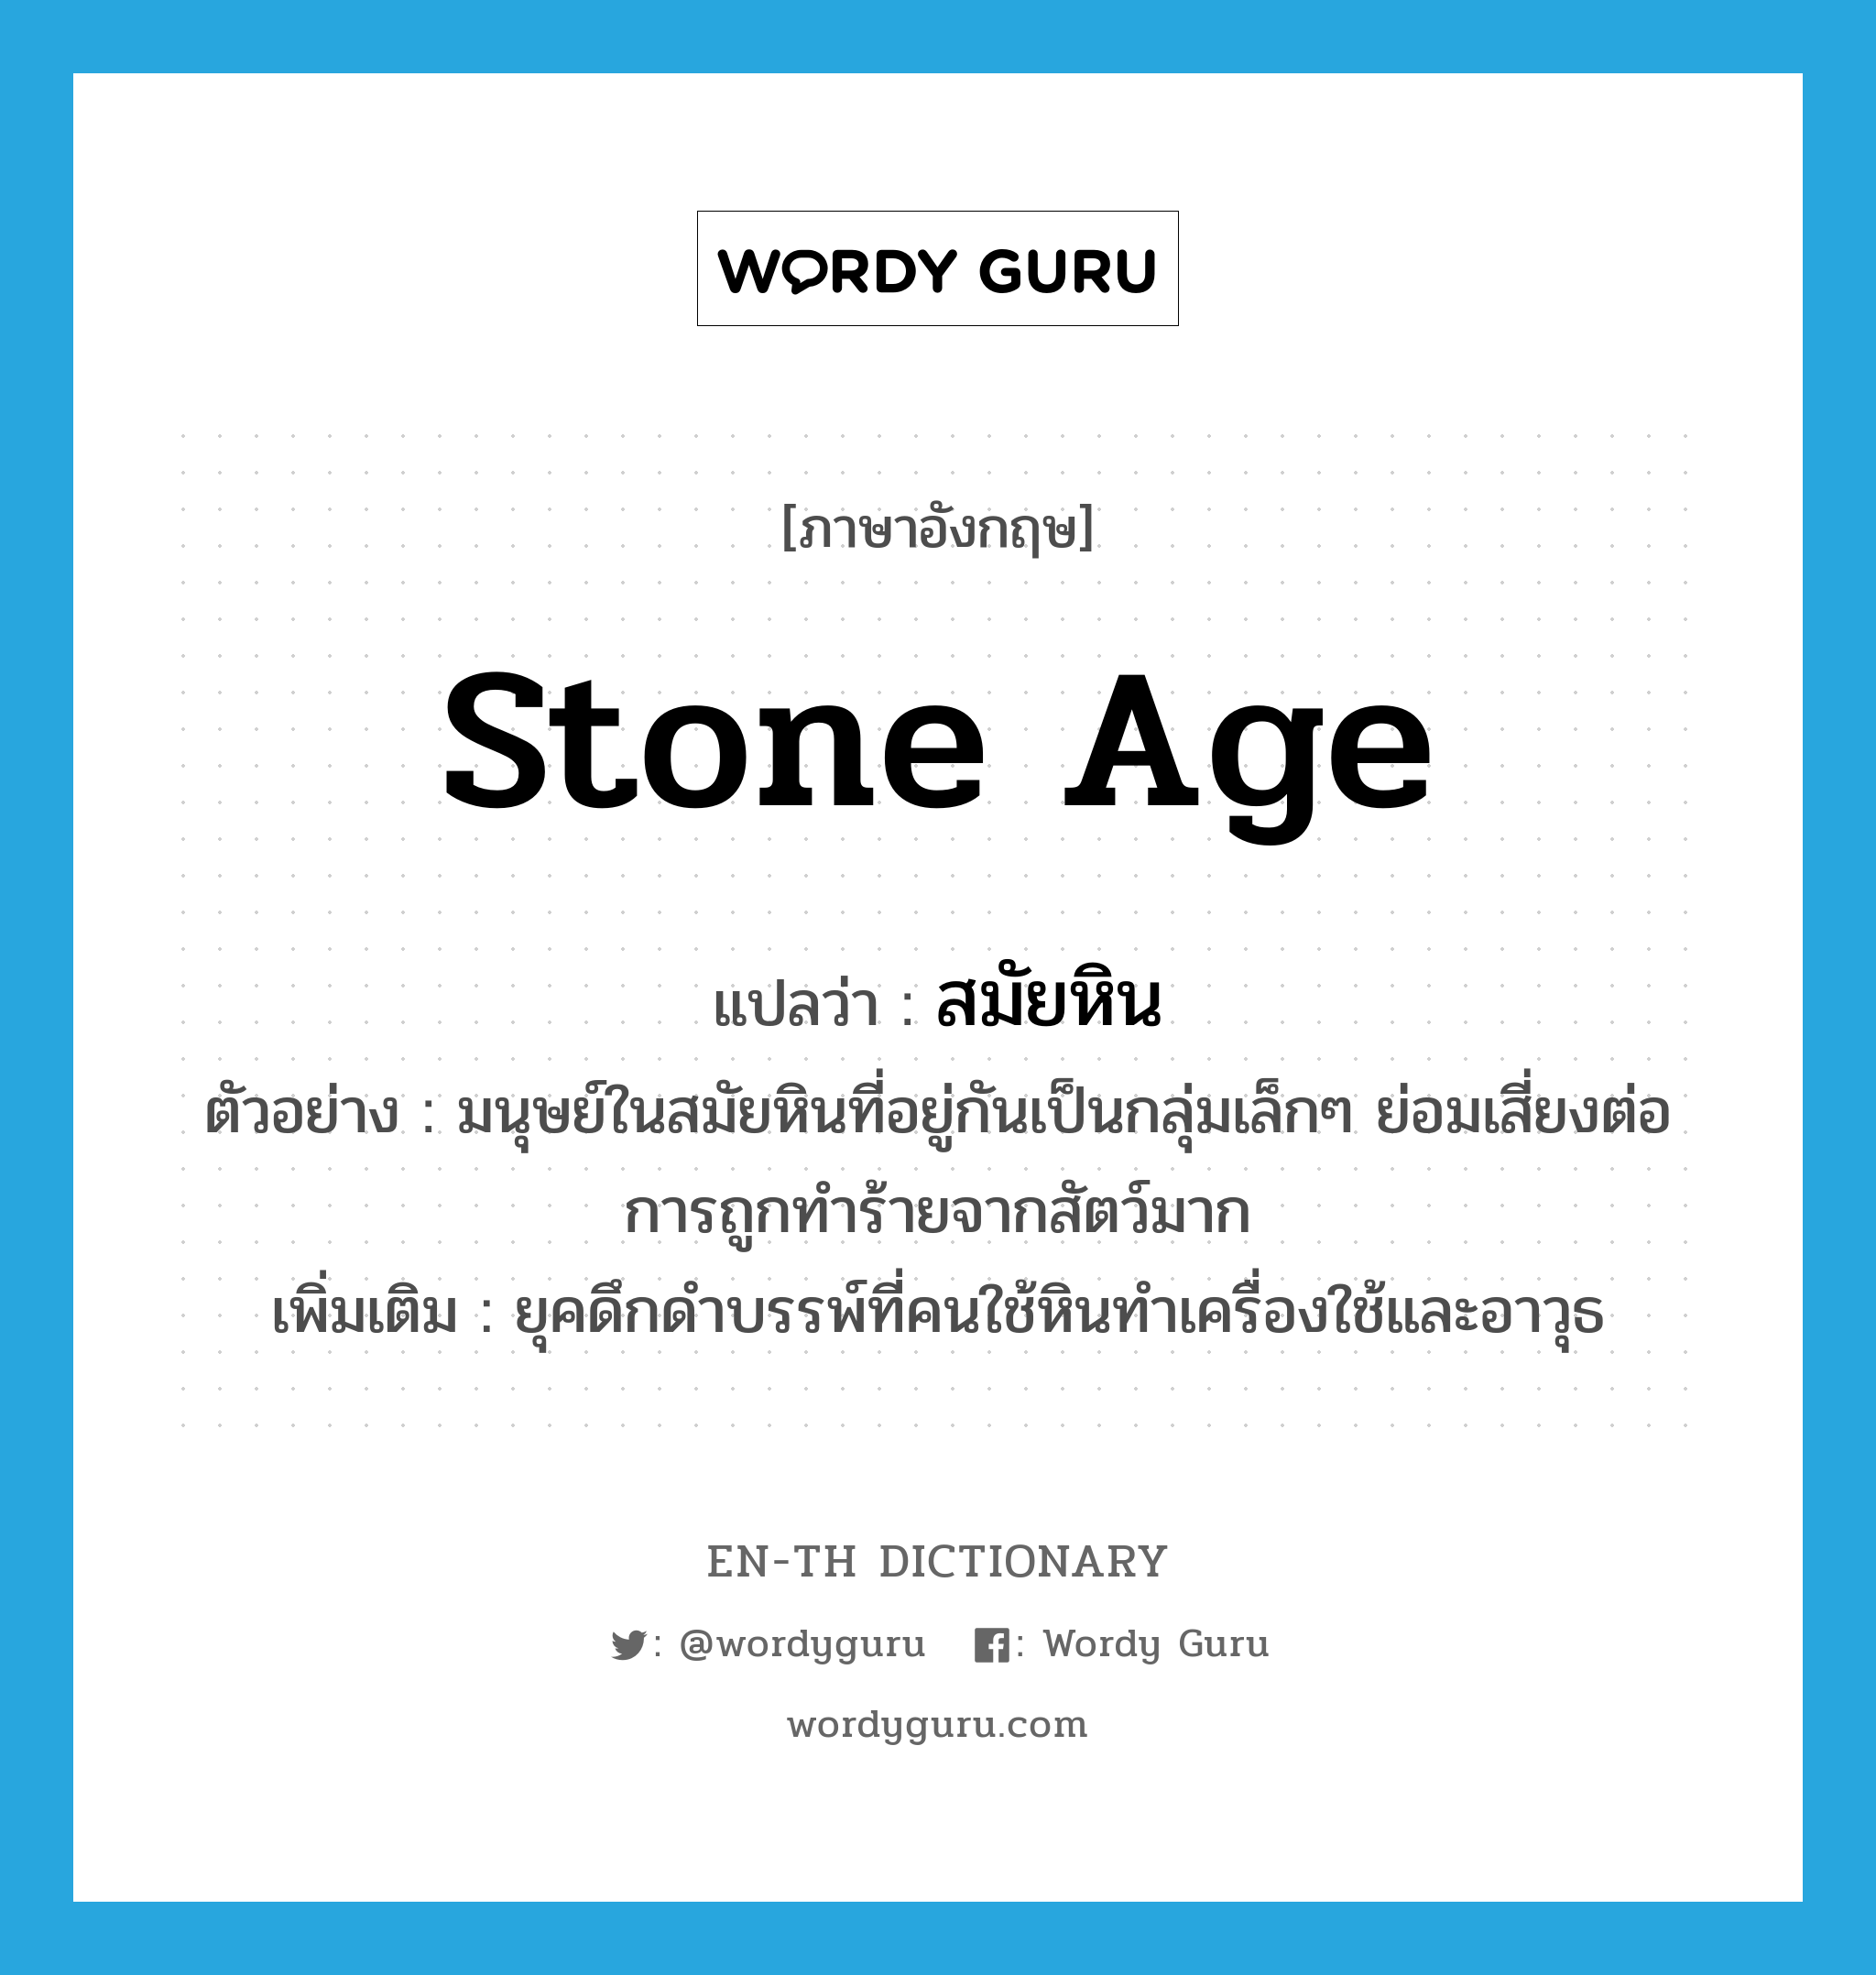 stone age แปลว่า?, คำศัพท์ภาษาอังกฤษ stone age แปลว่า สมัยหิน ประเภท N ตัวอย่าง มนุษย์ในสมัยหินที่อยู่กันเป็นกลุ่มเล็กๆ ย่อมเสี่ยงต่อการถูกทำร้ายจากสัตว์มาก เพิ่มเติม ยุคดึกดำบรรพ์ที่คนใช้หินทำเครื่องใช้และอาวุธ หมวด N